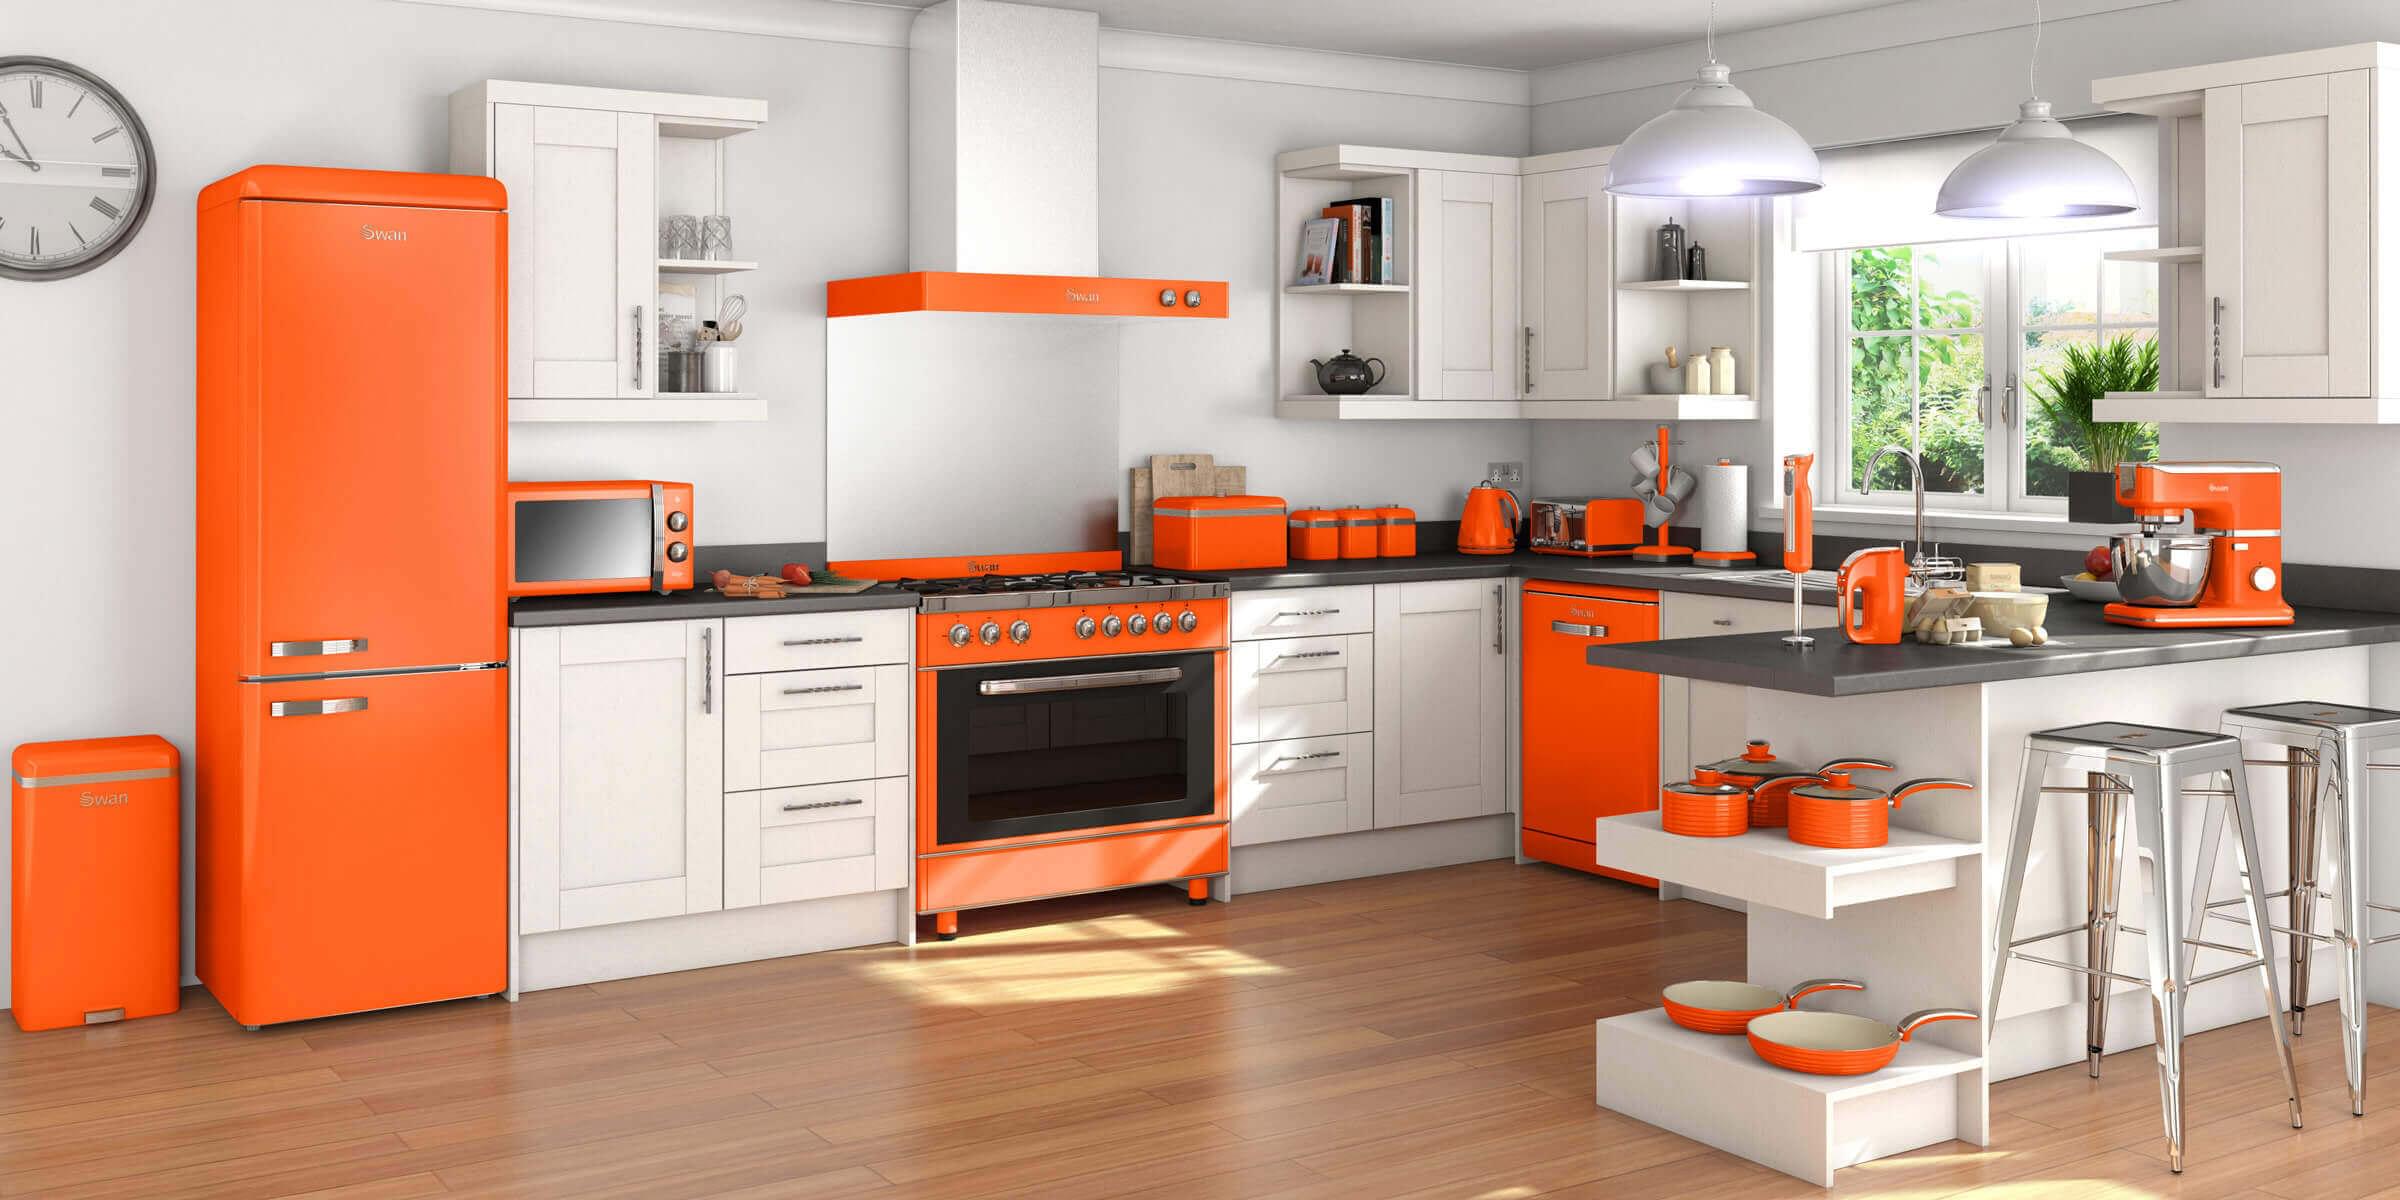 big chill orange kitchen appliances